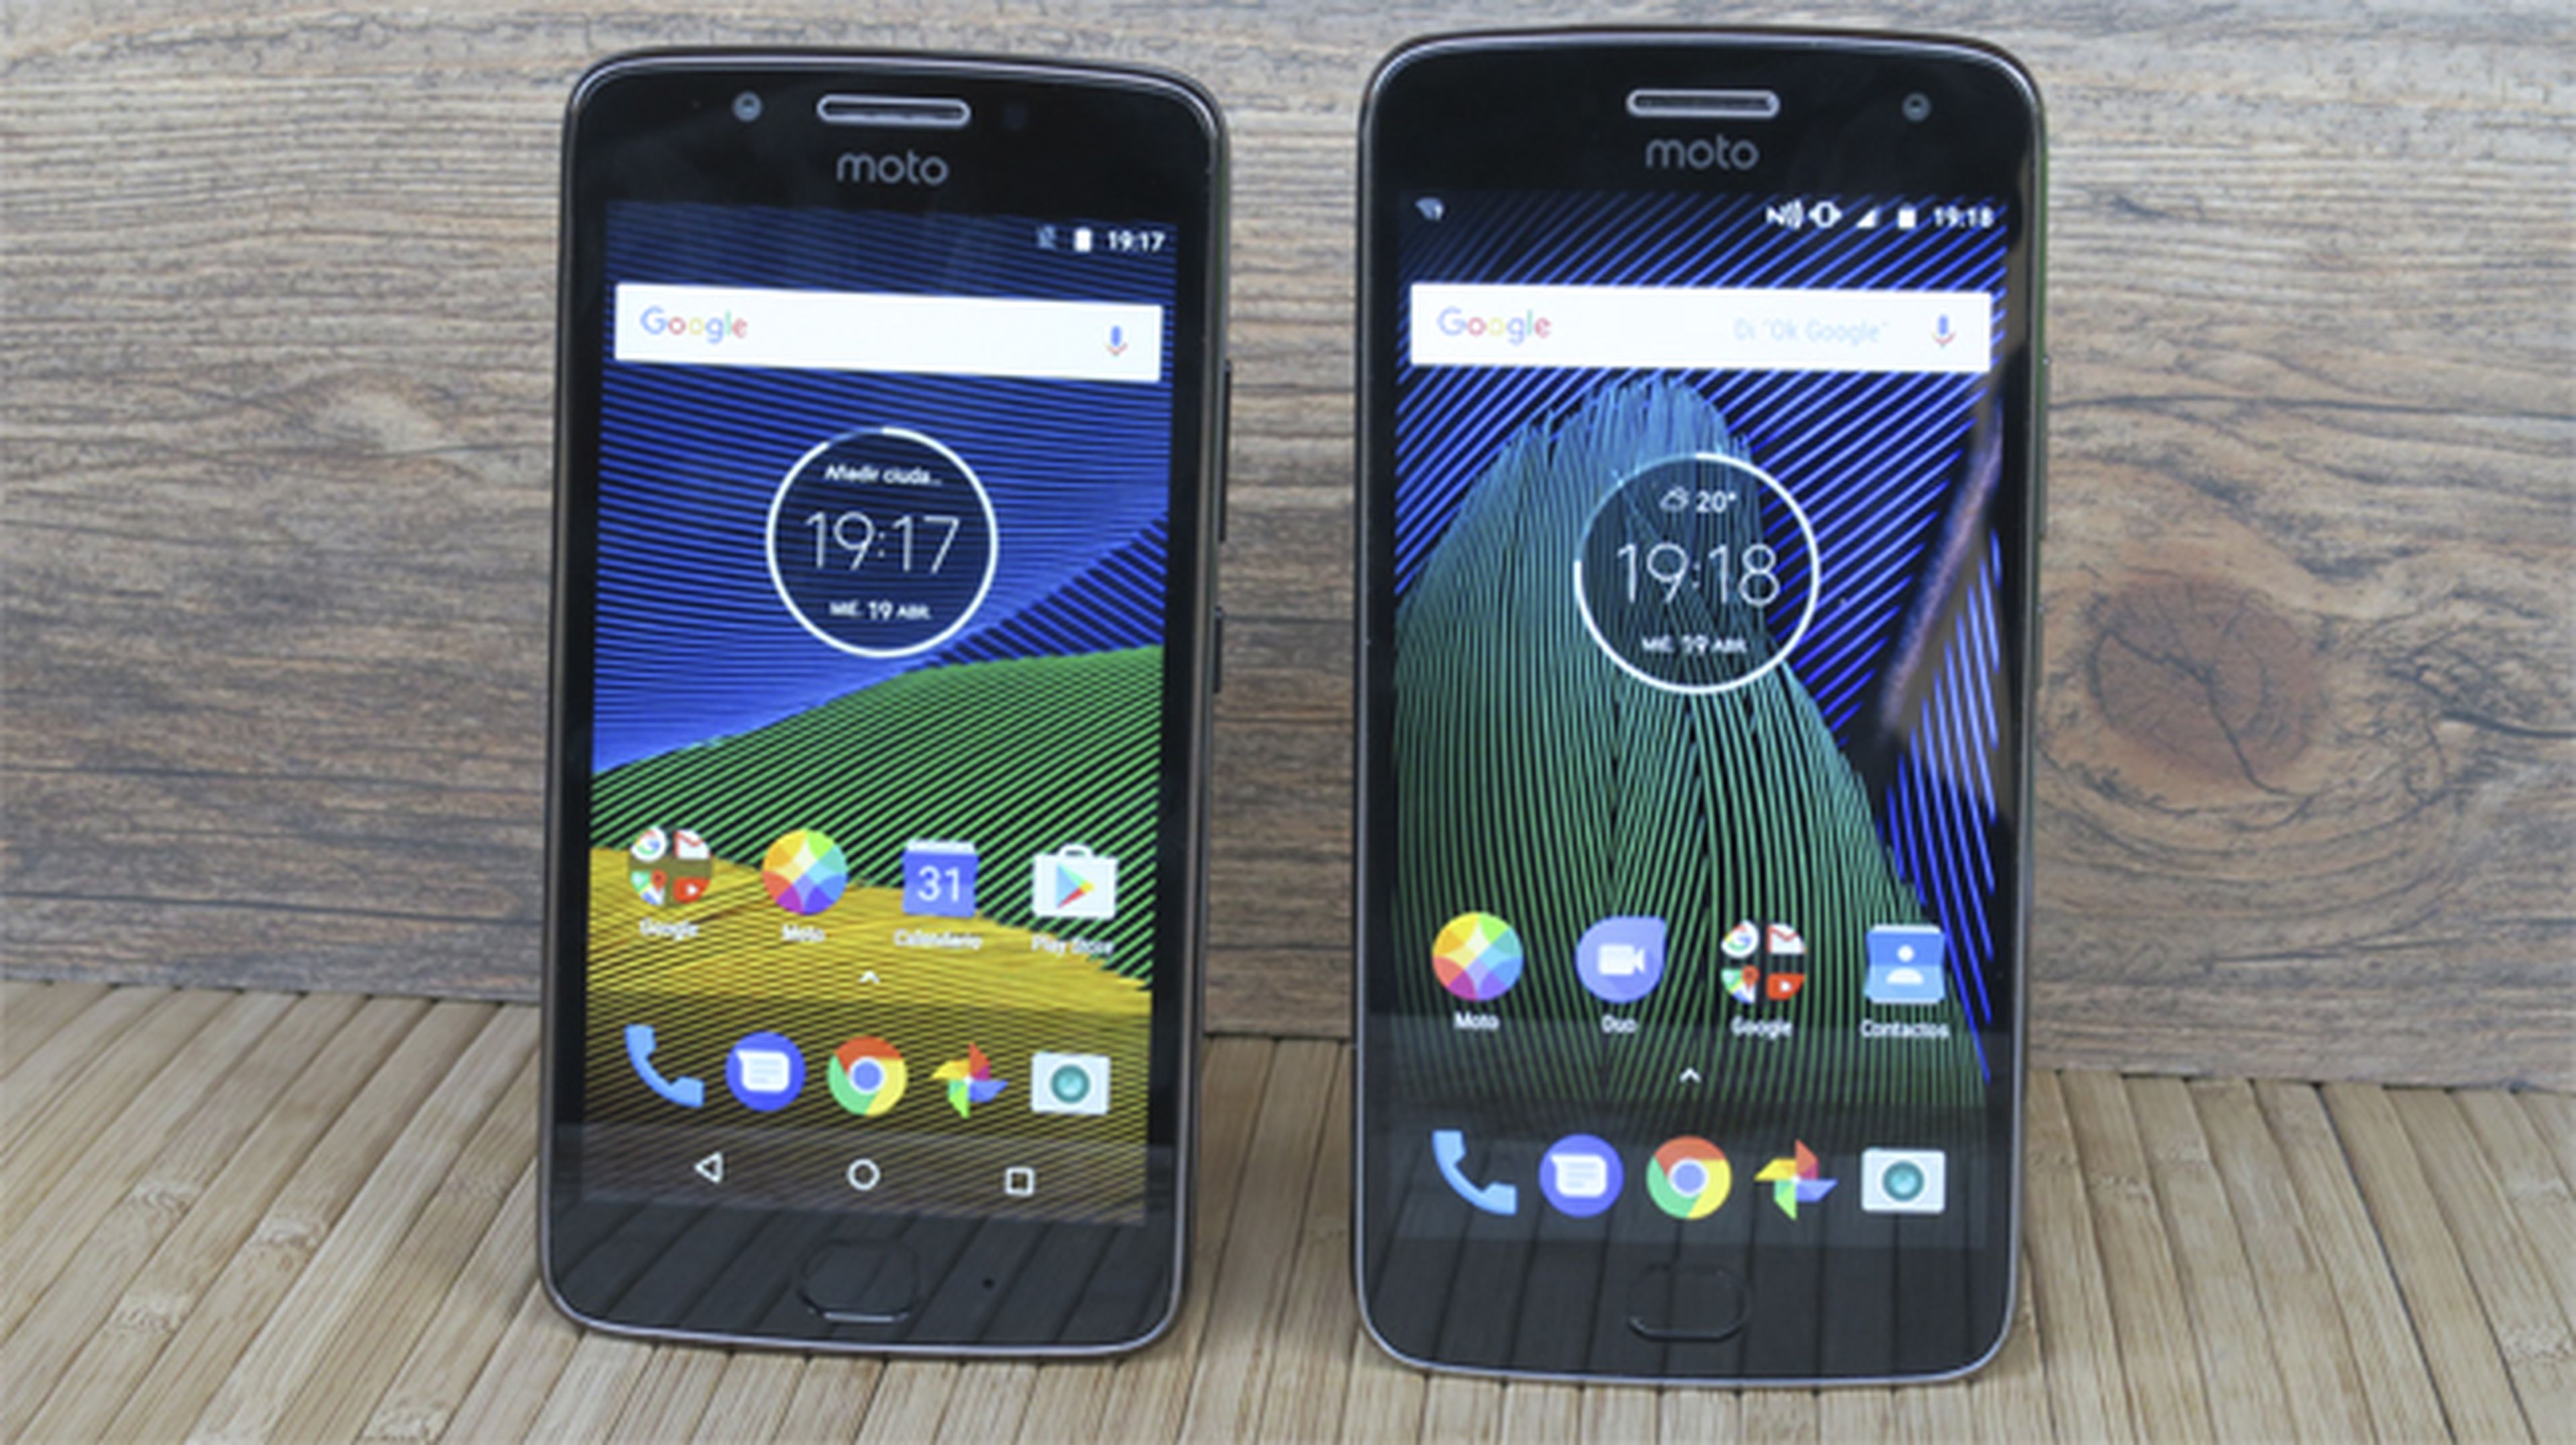 El Moto G5 a la izquierda, y el Moto G5 Plus a la derecha